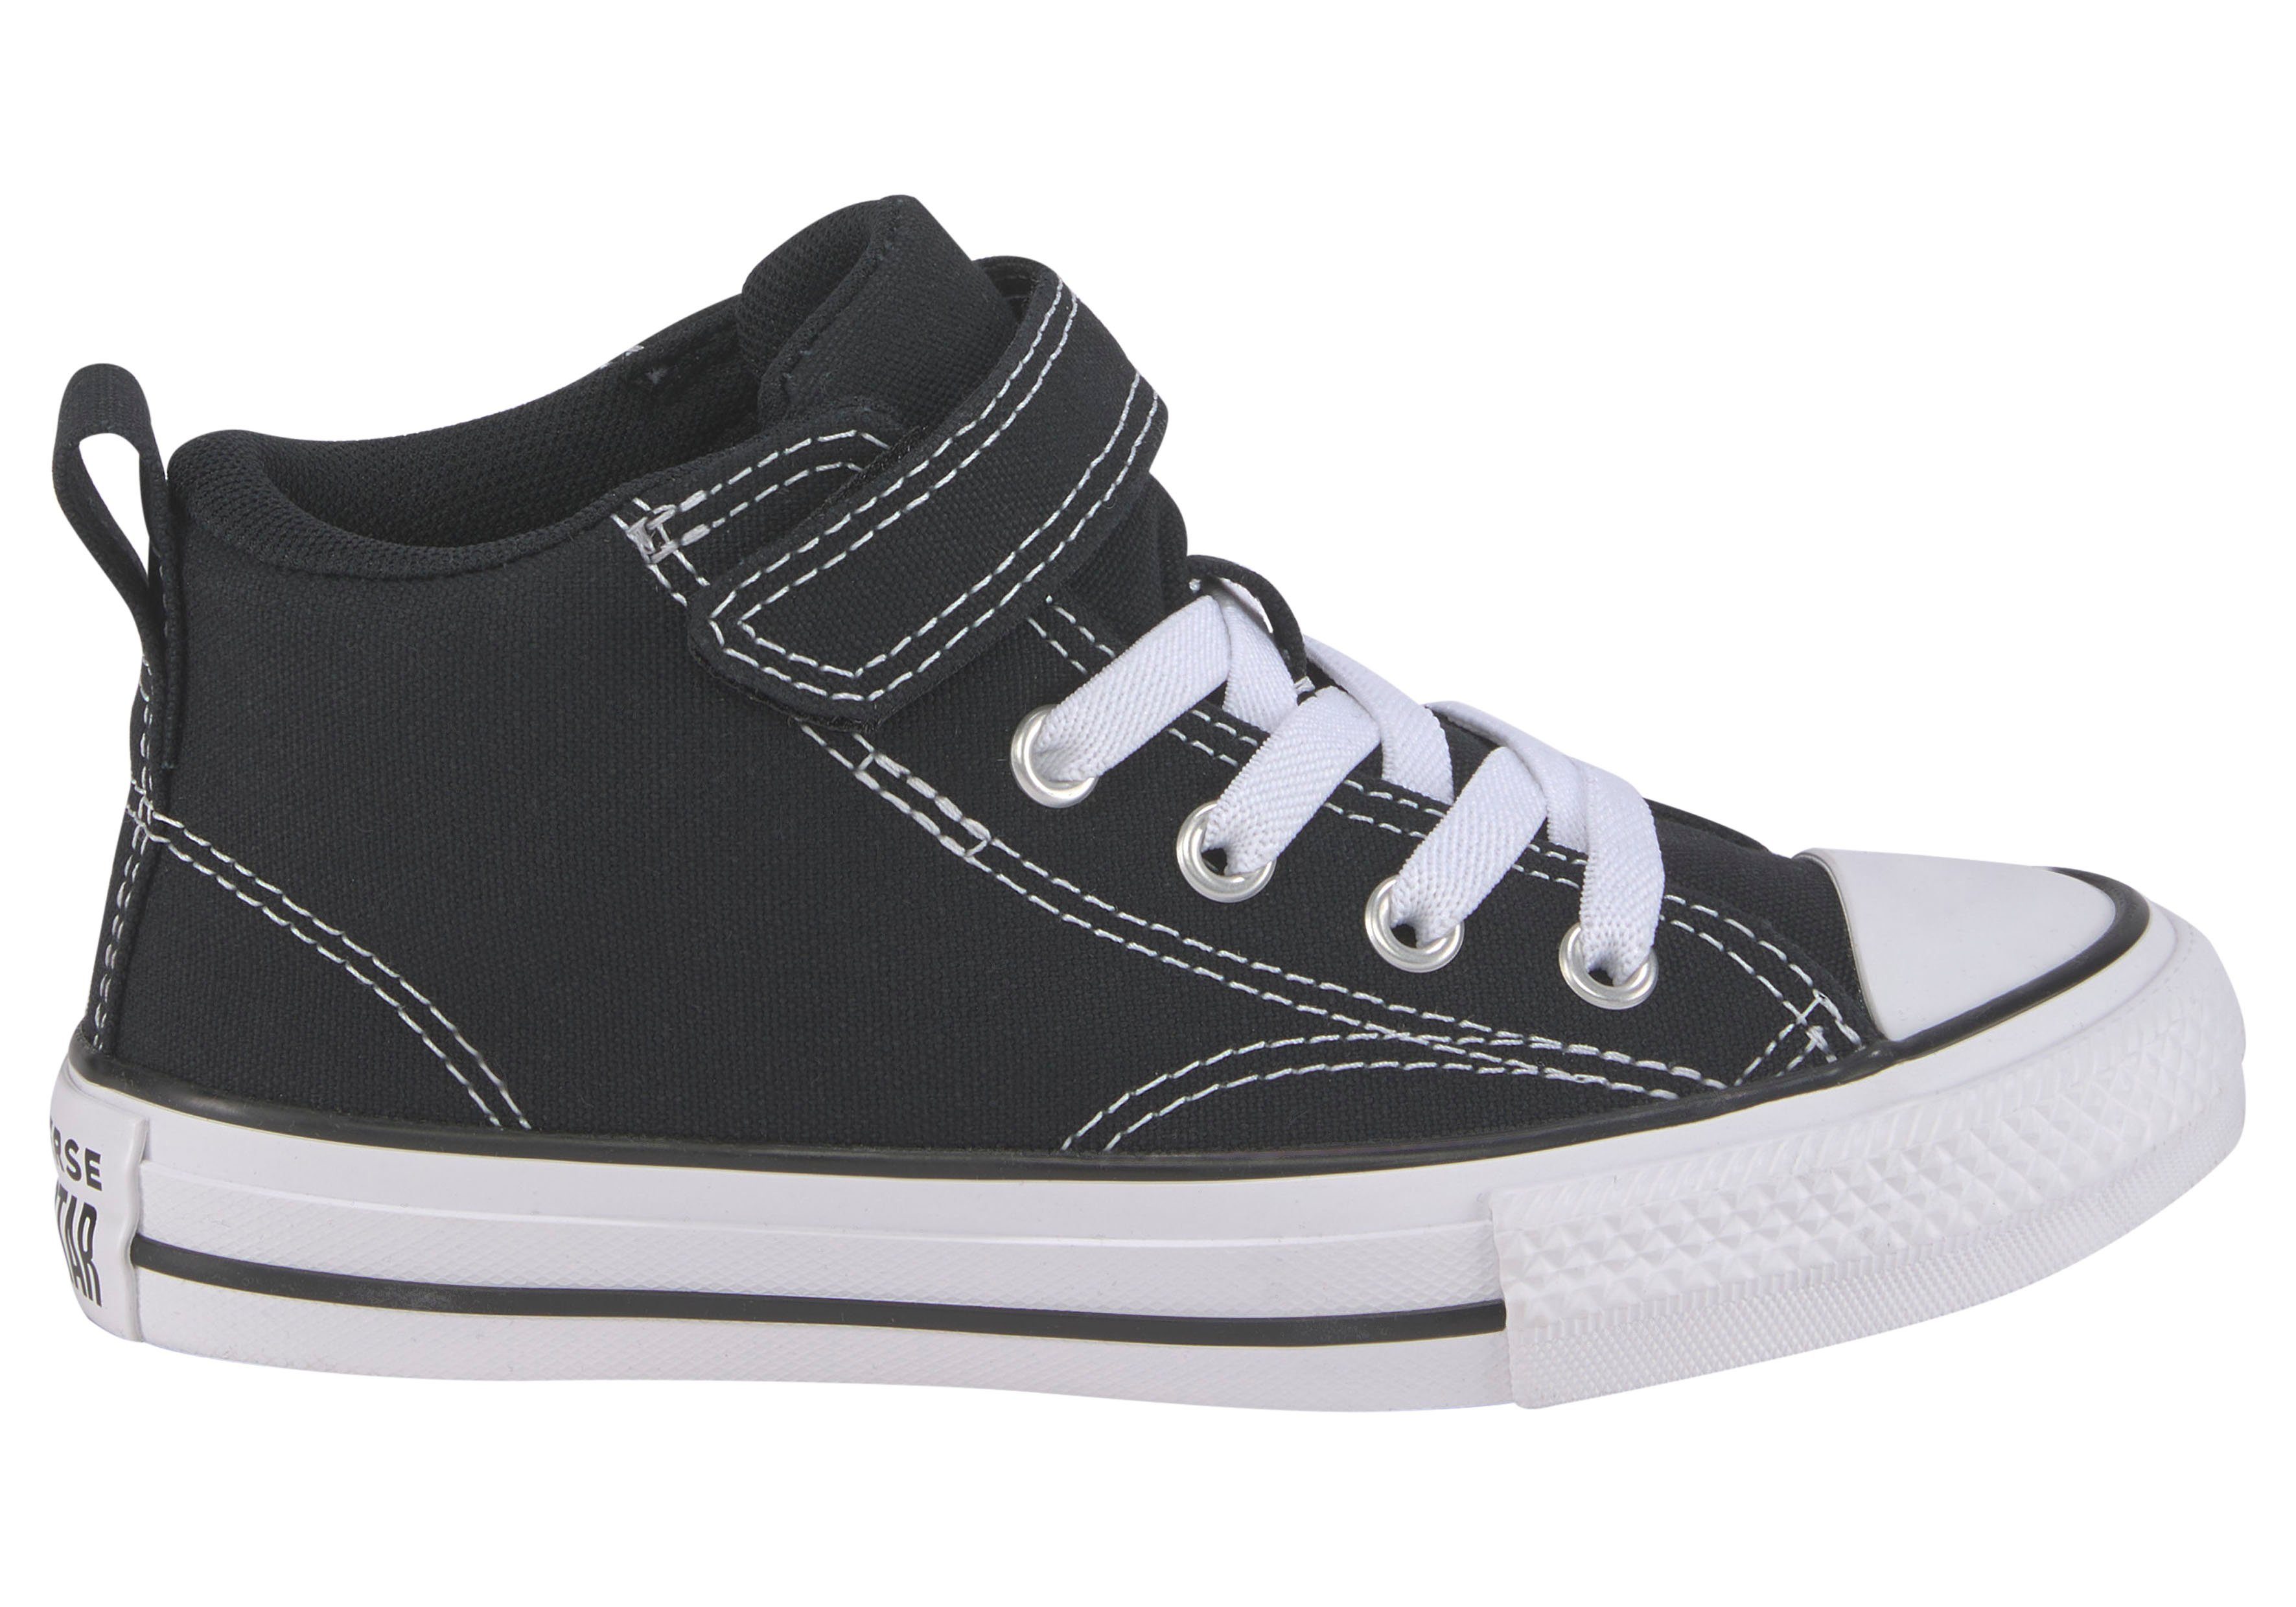 TAYLOR CHUCK STAR ALL STREET MALDEN schwarz-weiß Converse Sneaker